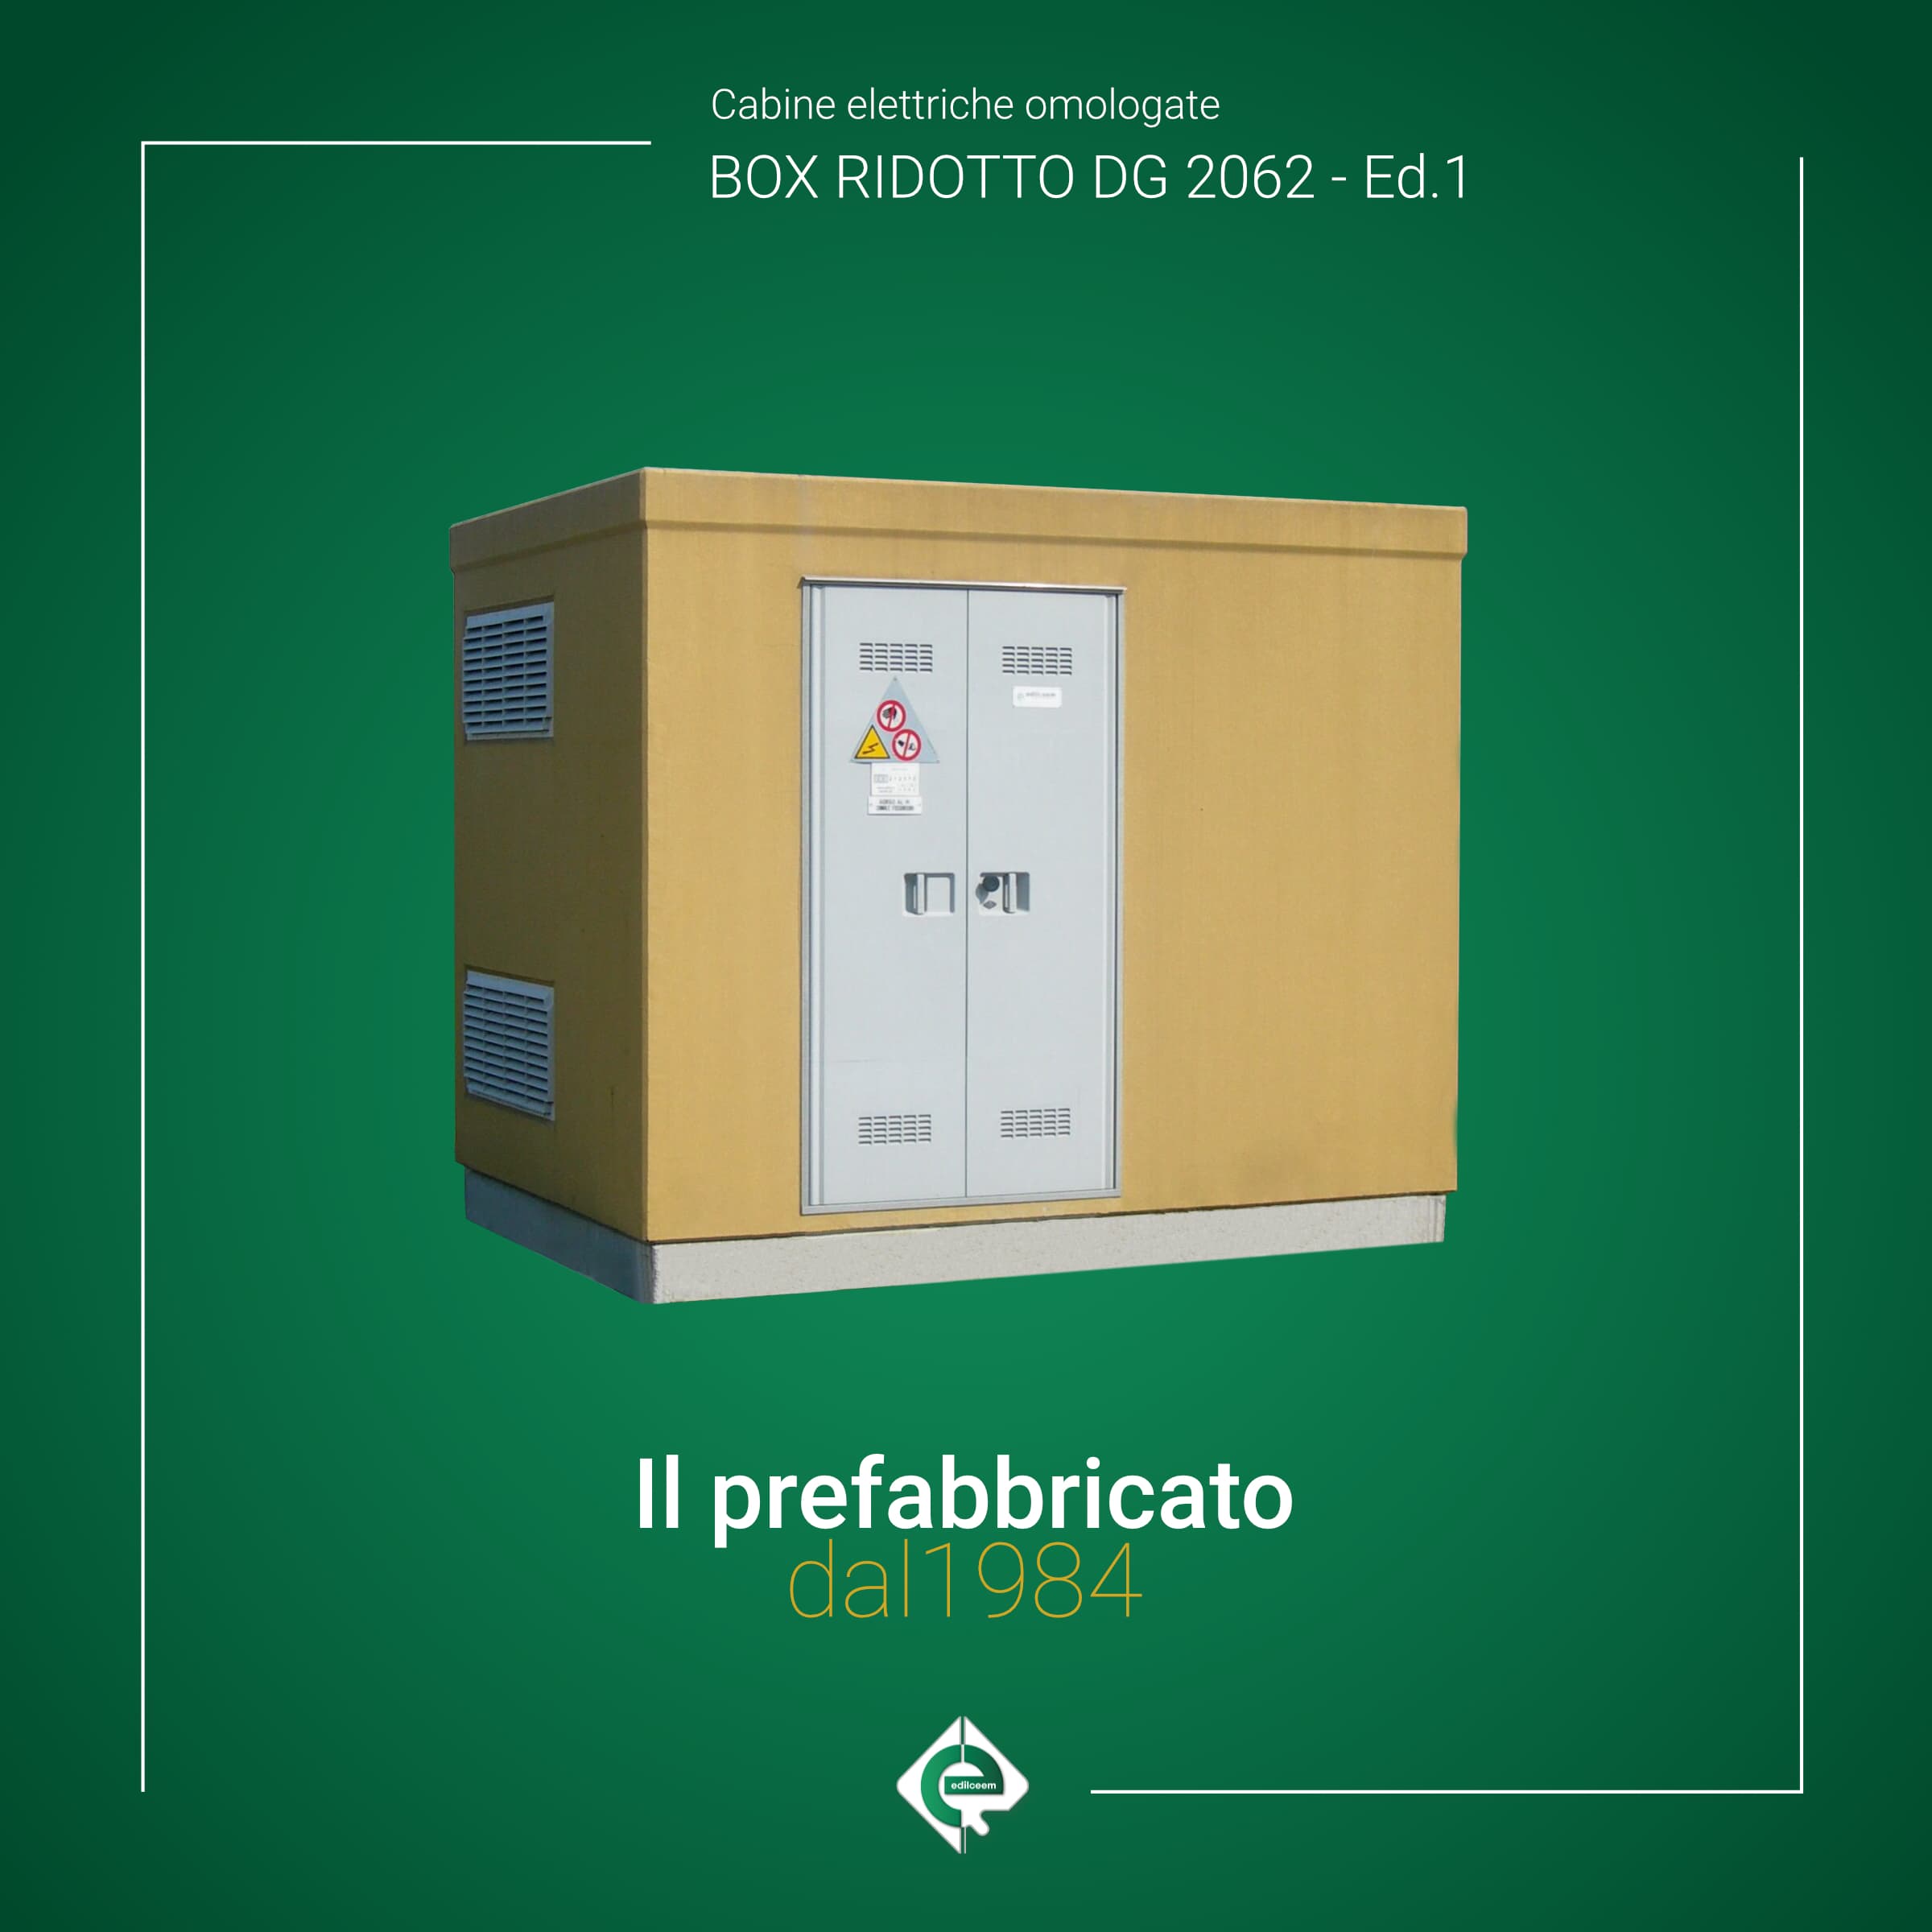 cabine-elettriche-enel-BOX-RIDOTTO_DG2062